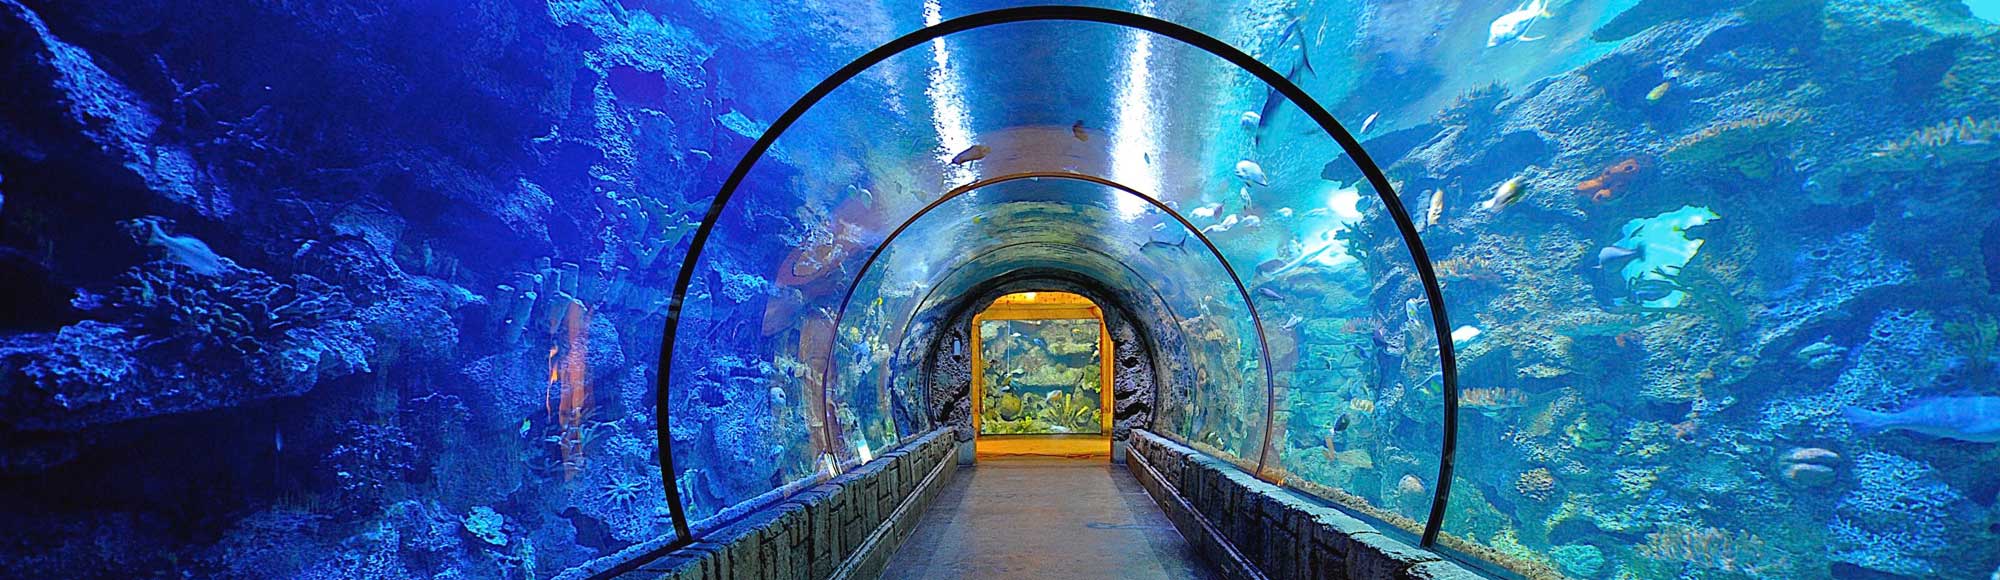 Shark Reef Aquarium at Mandalay Bay of Las Vegas